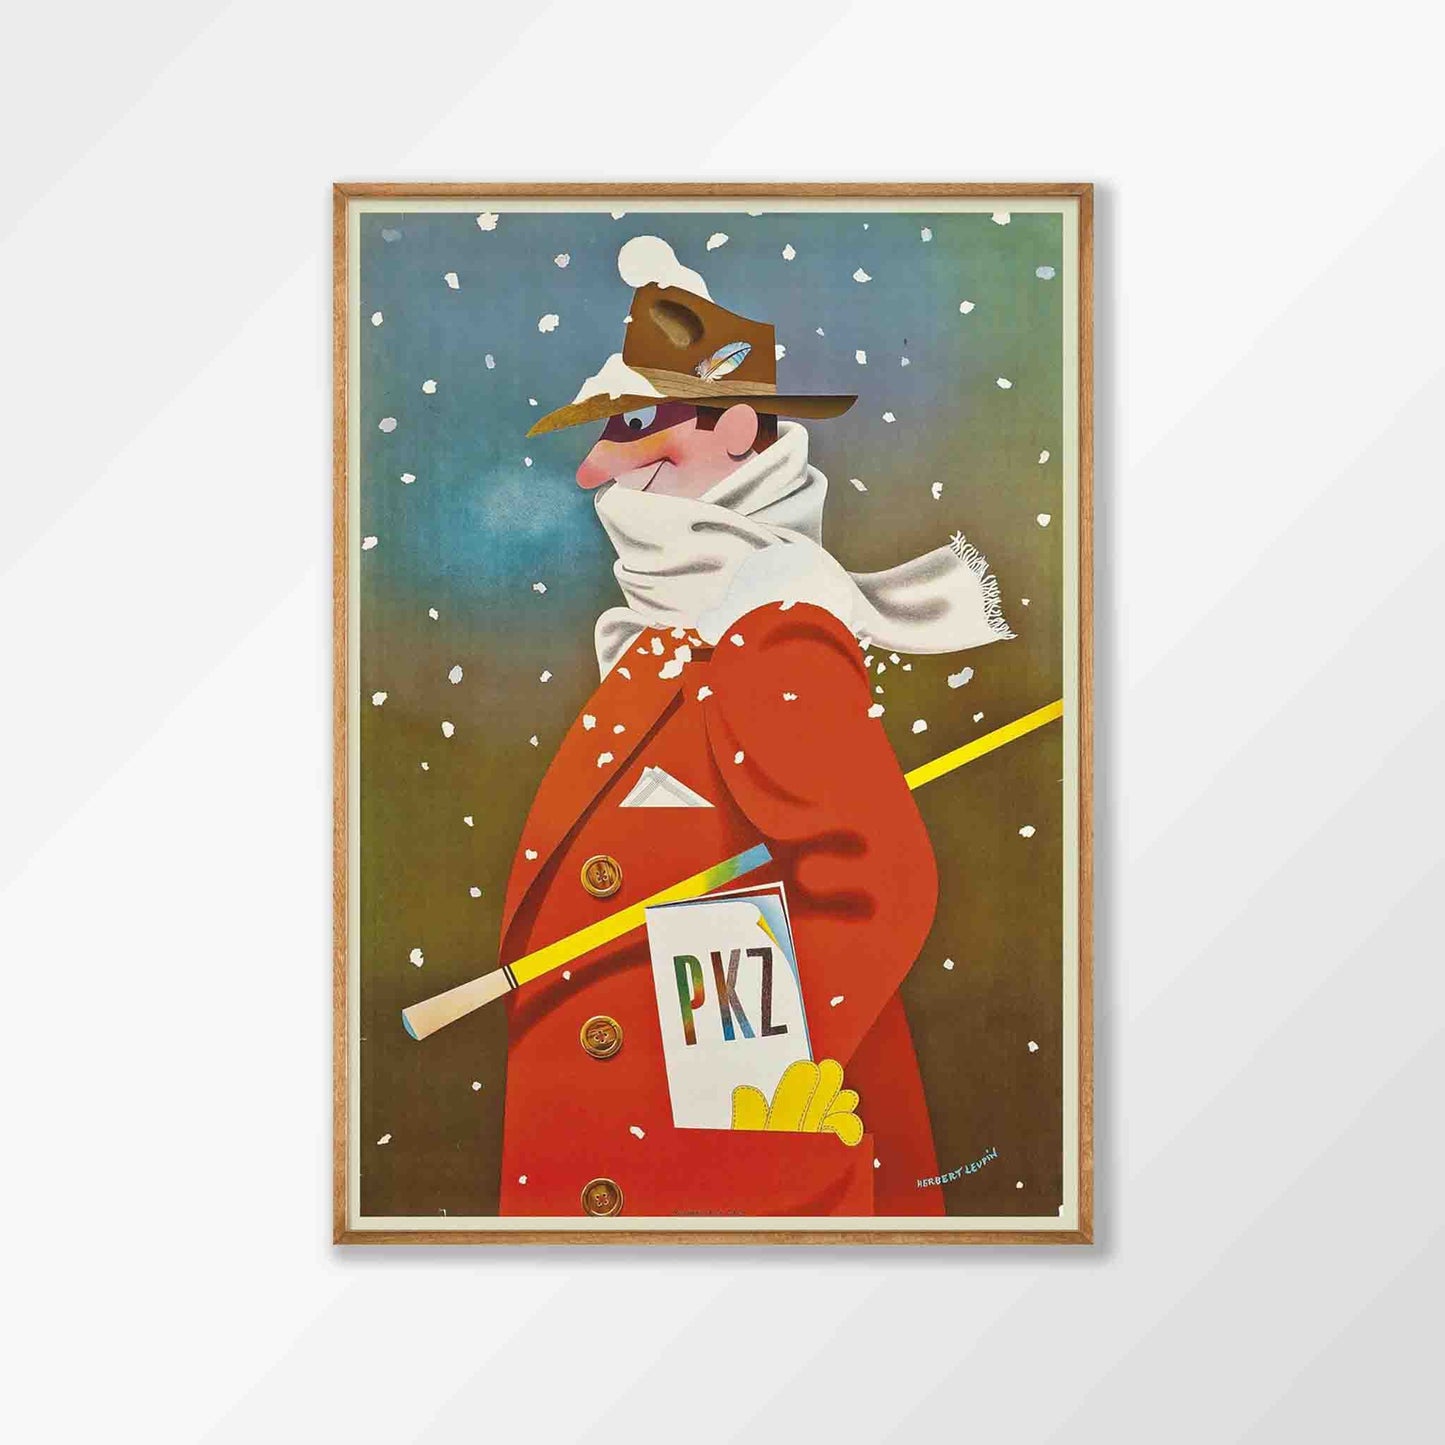 Snowman by Herbert Leupin